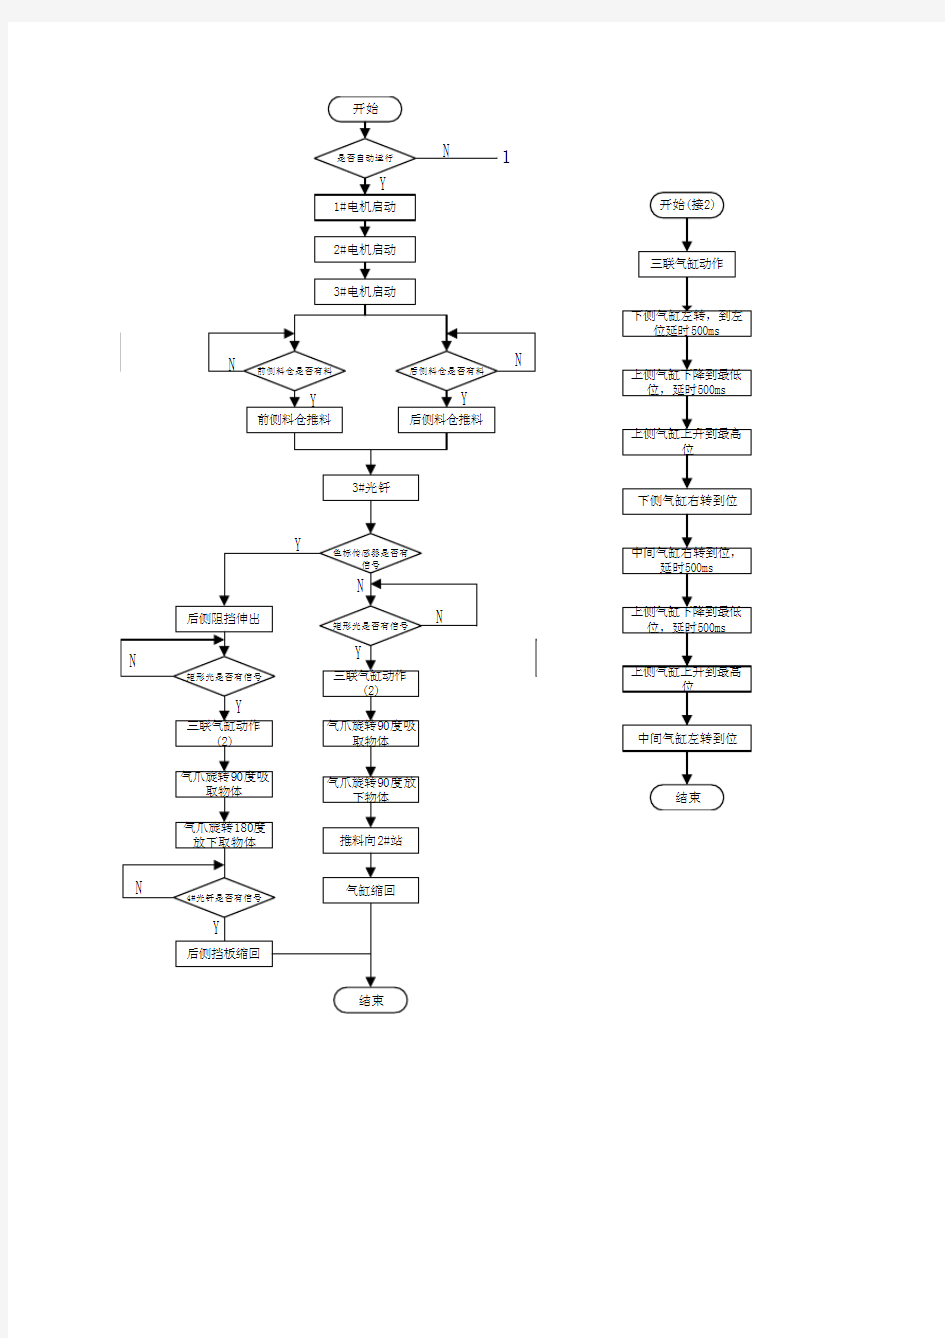 自动化生产线供料部分程序流程图